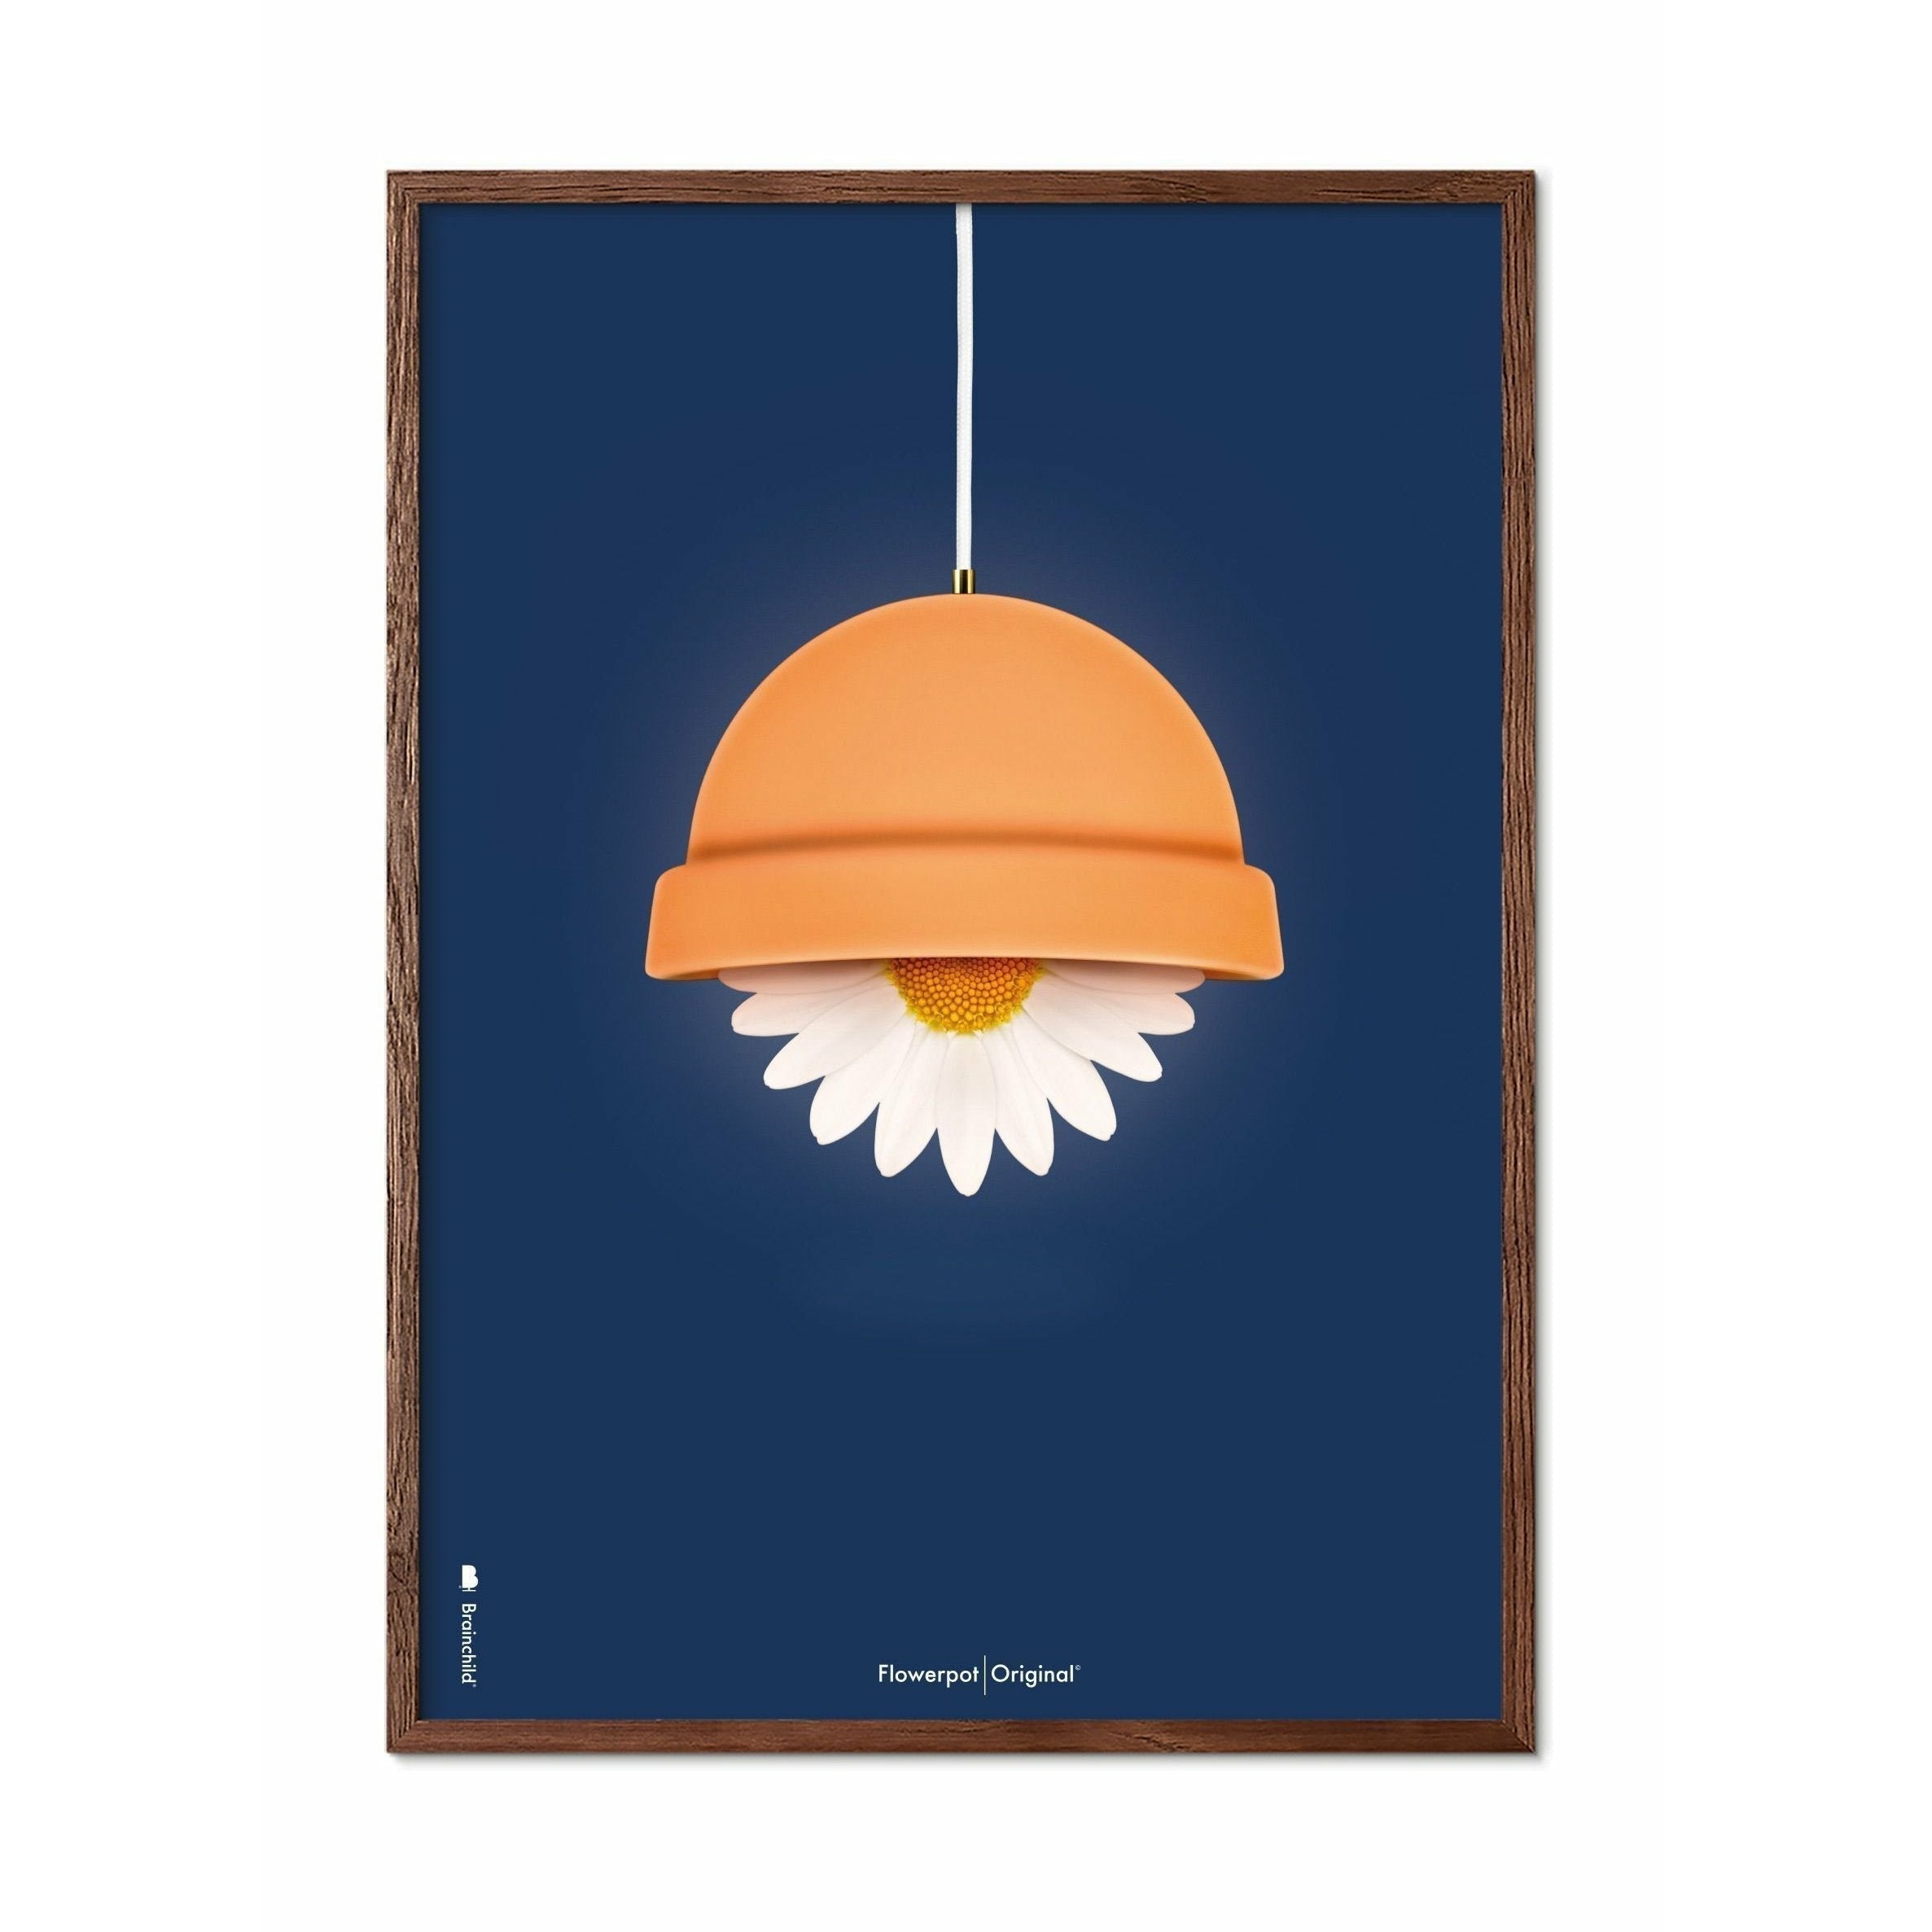 Brainchild Flowerpot Classic Poster, Dark Wood Frame 70x100 Cm, Dark Blue Background